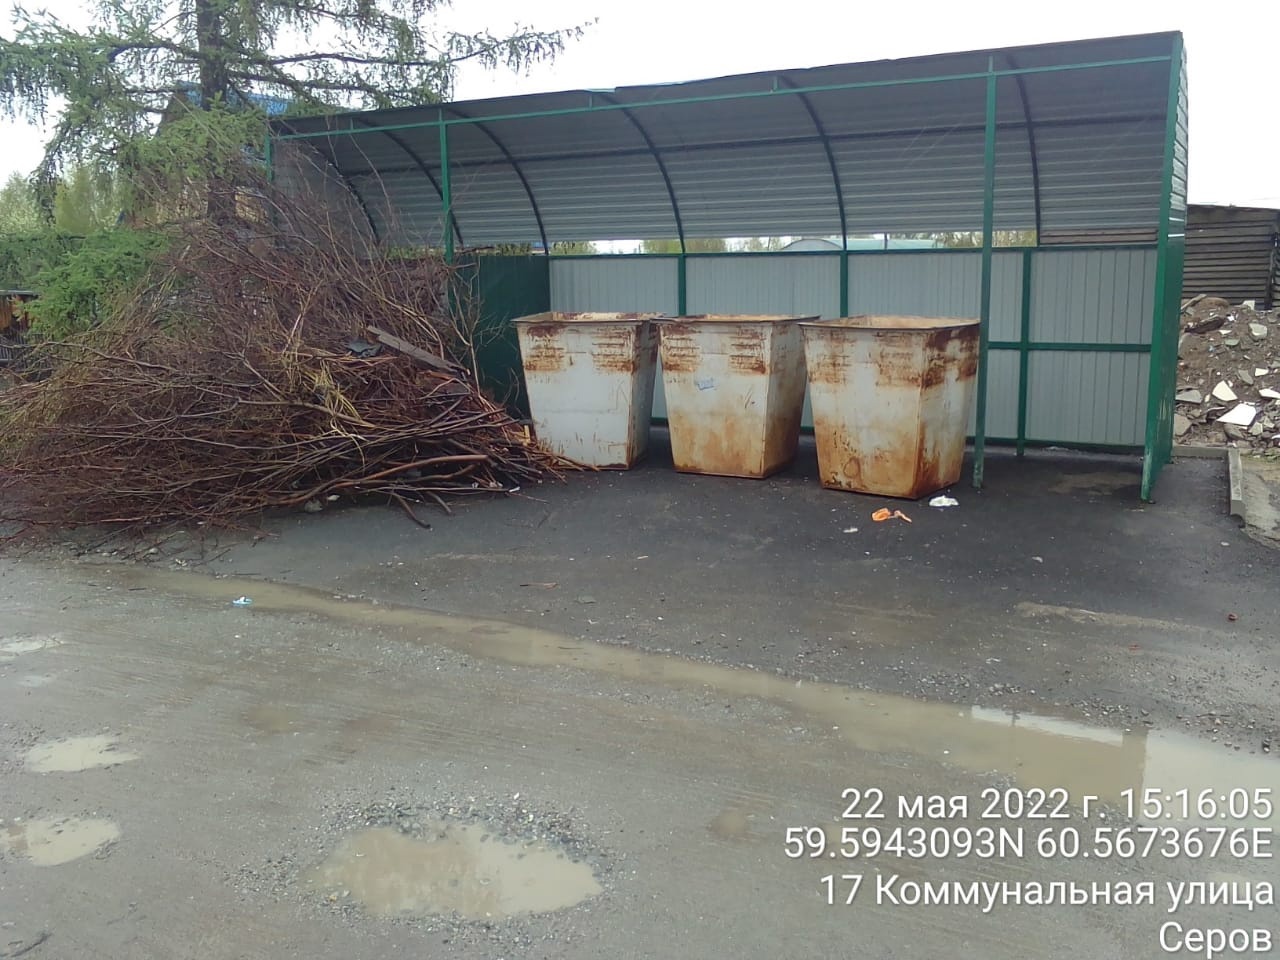 140 случаев навалов веток рядом с мусорными контейнерами выявлены на Урале